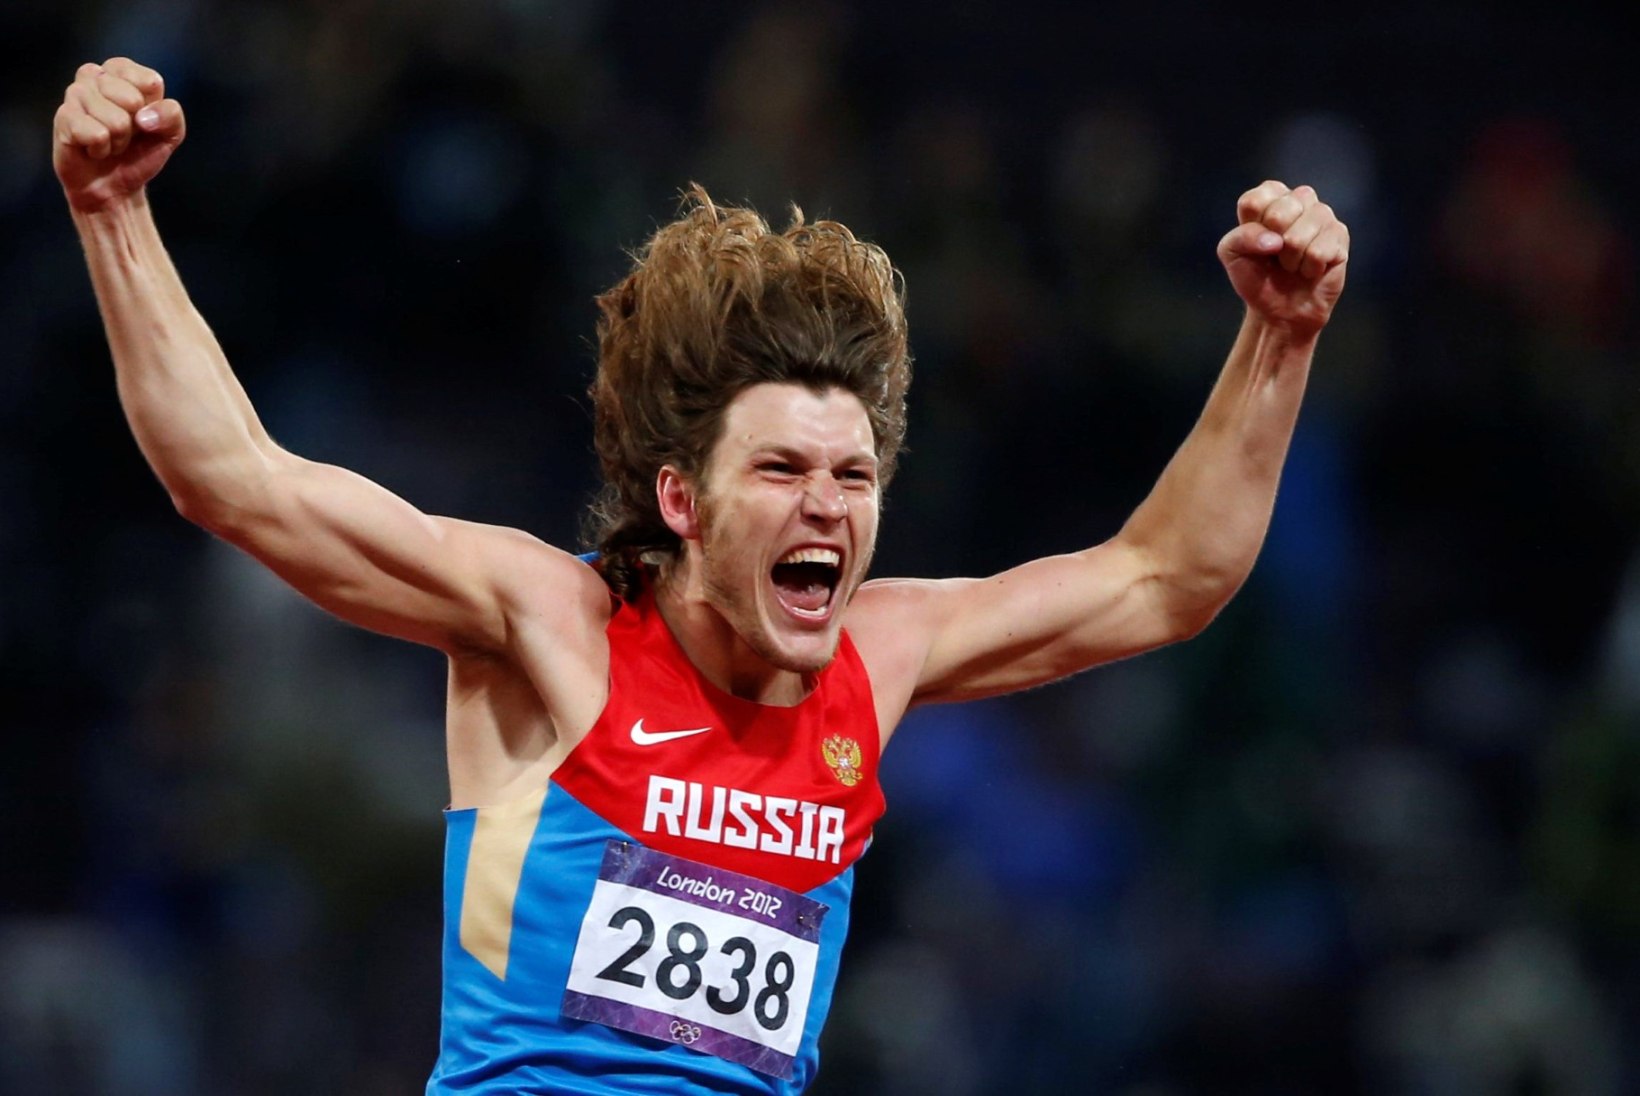 Venemaa kaotas dopingukaristuse tõttu järjekordse olümpiavõitja